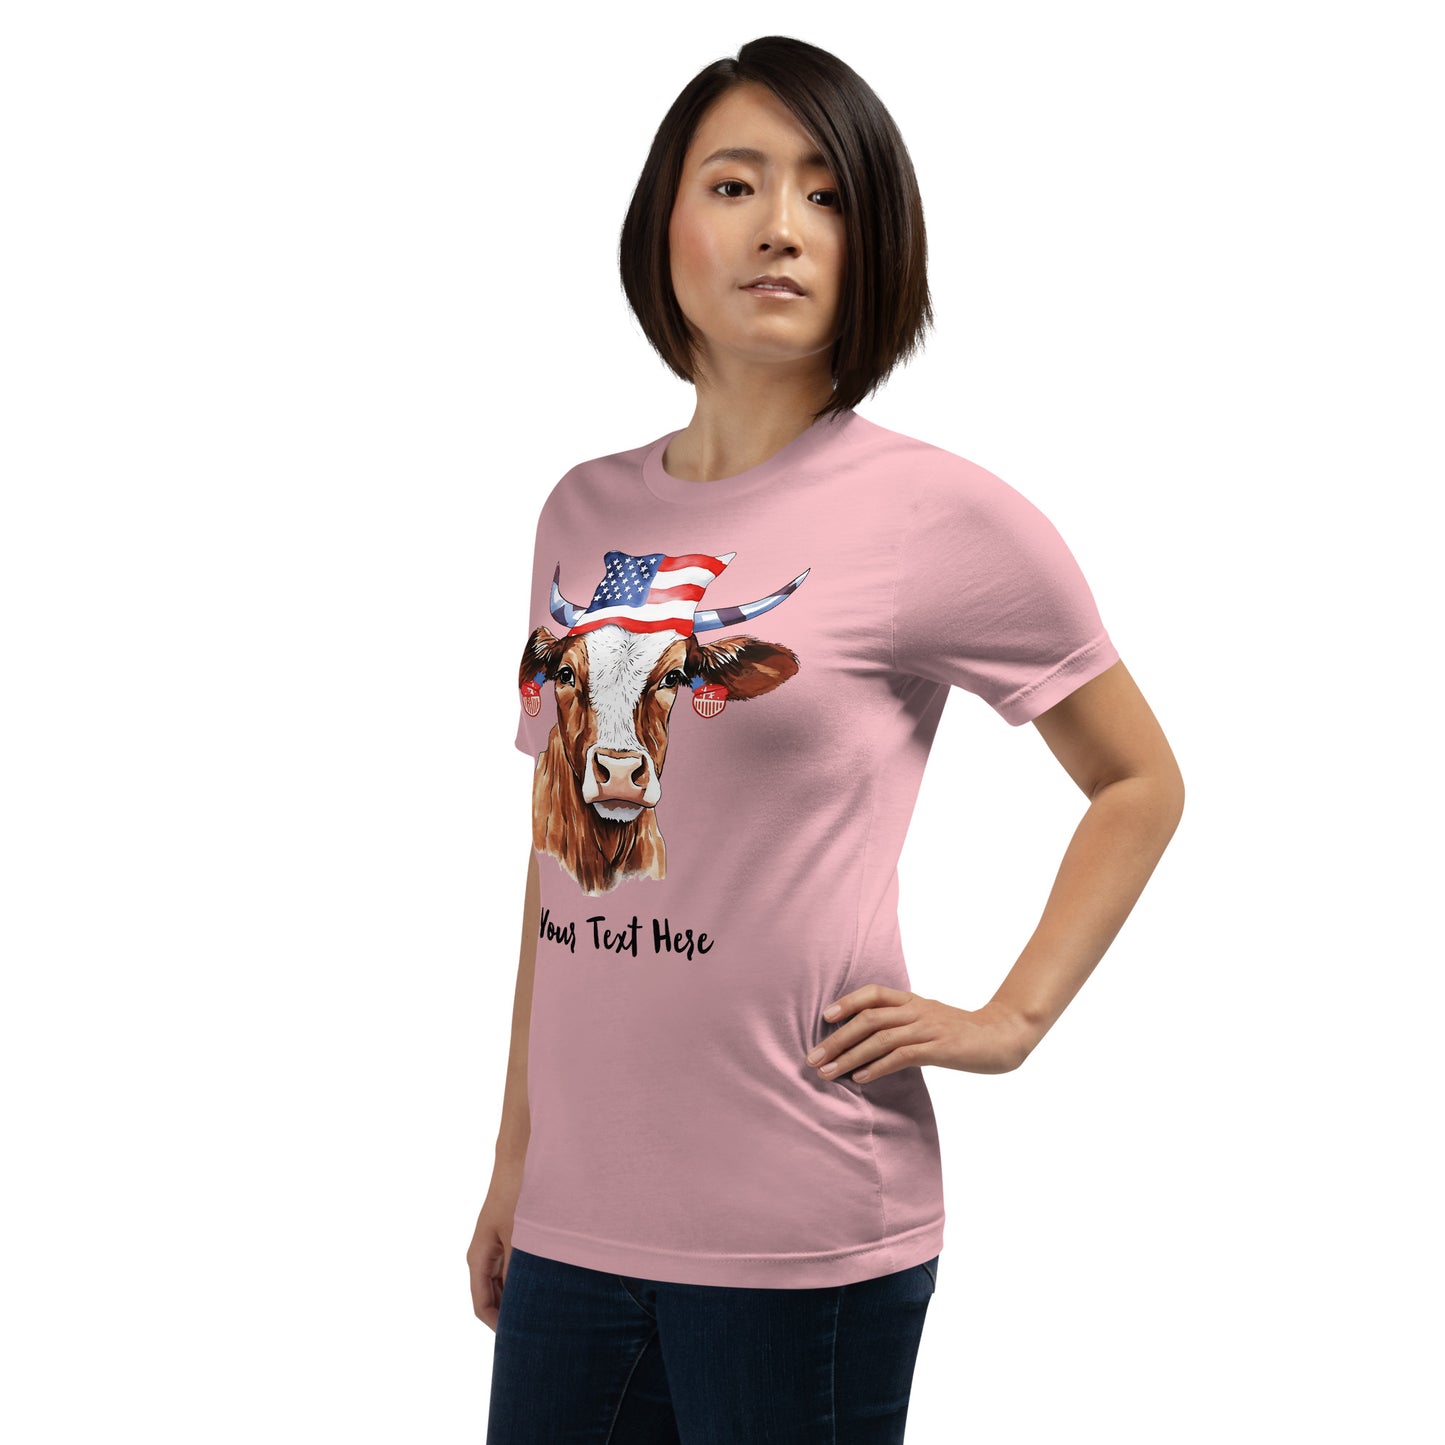 Camiseta personalizable con vaca patriótica para amantes de las vacas